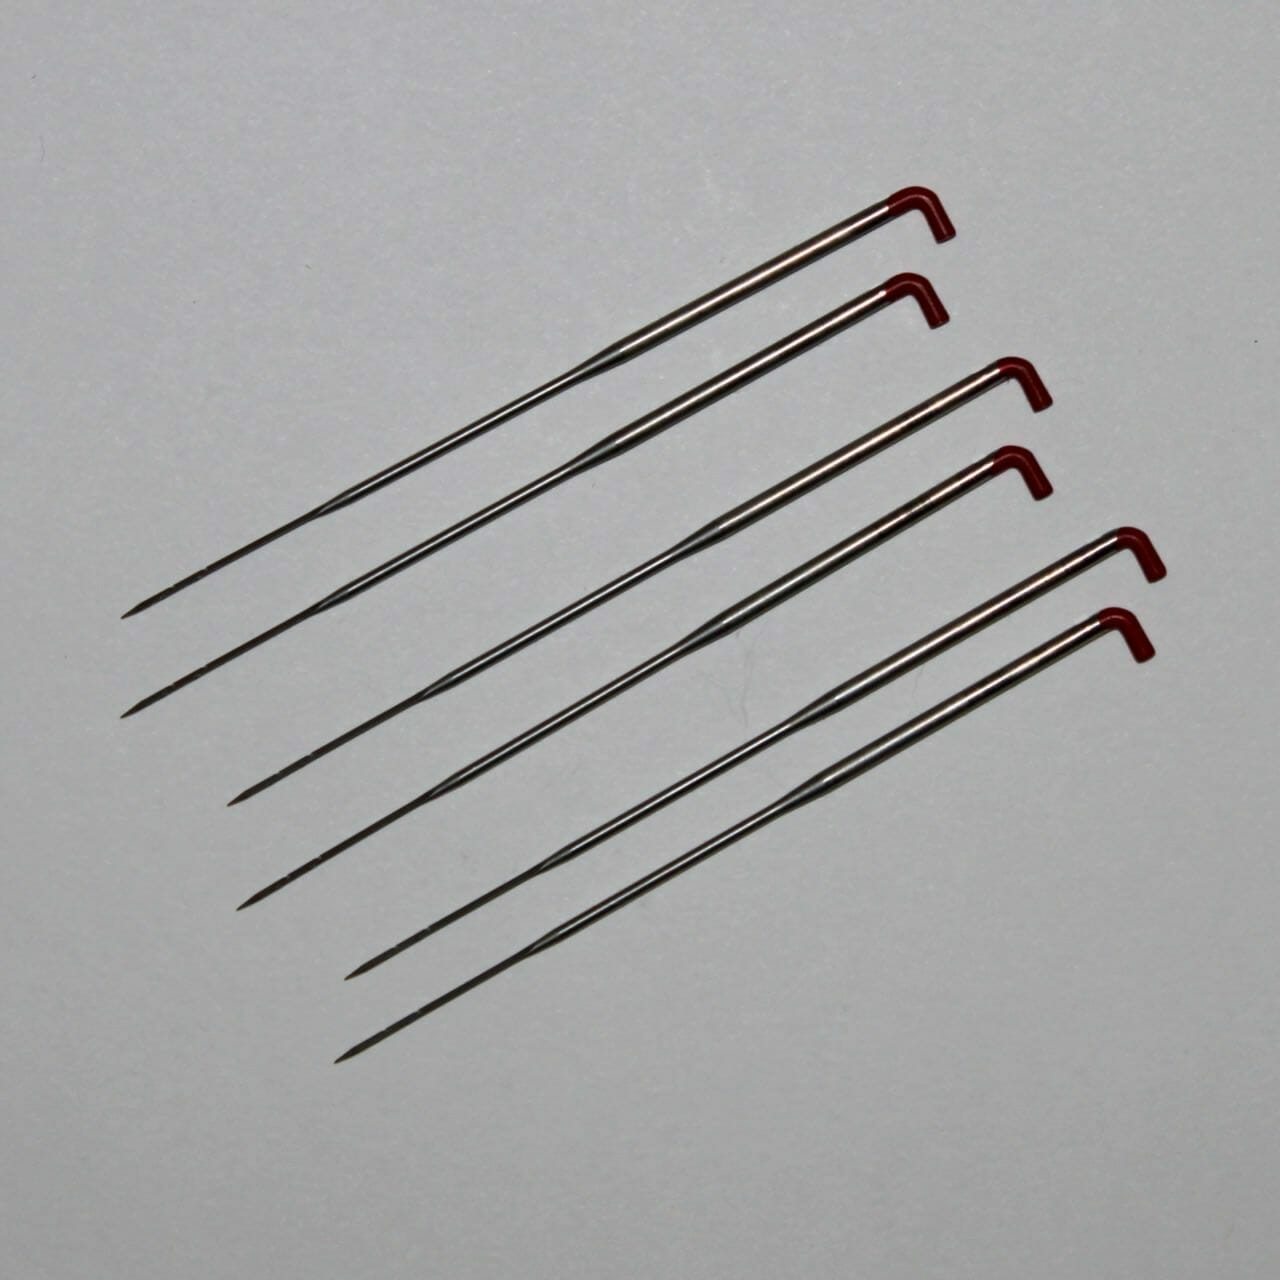 M01229x5 MOREZMORE 5 Felting Needles 36G MEDIUM TRIANGULAR 3.5 EXTRA LONG  for Dry Needle Felting